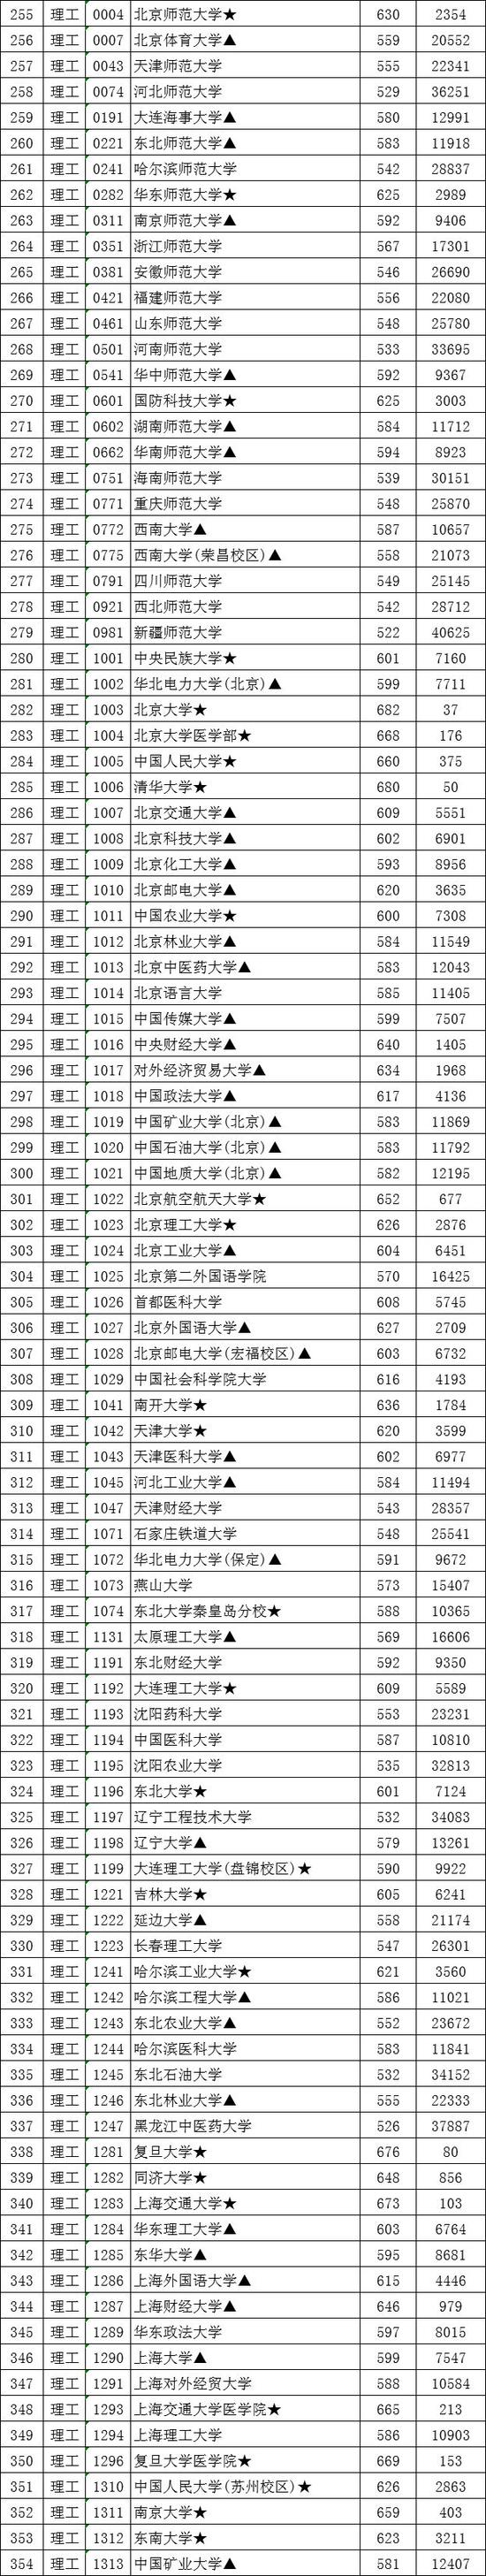 2020年江西省高考投_2020年江西省成人高考最低录取控制分数线